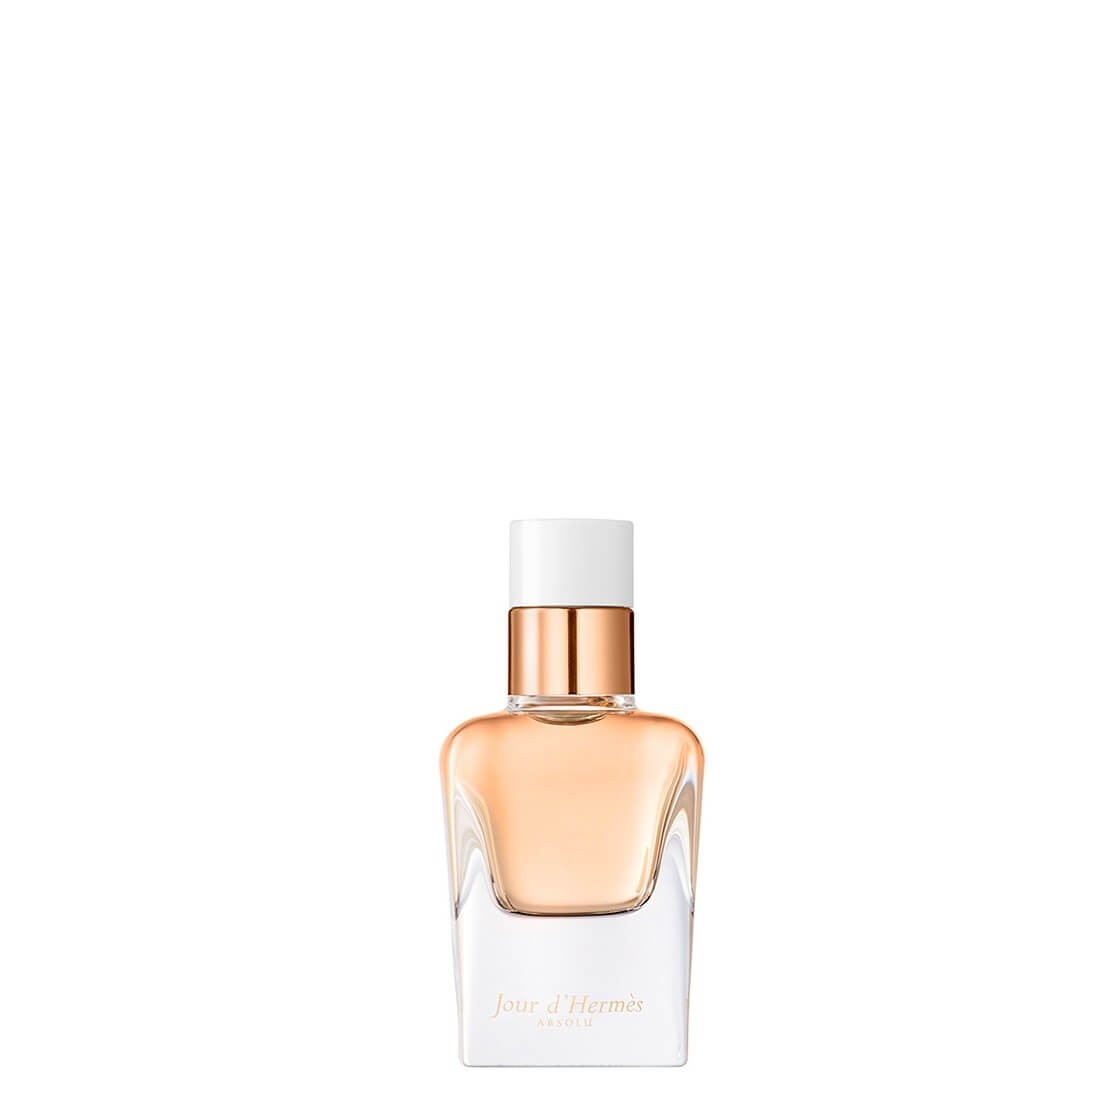 Hermès - Jour D'Hermès Absolu Eau de Parfum - 30 ml